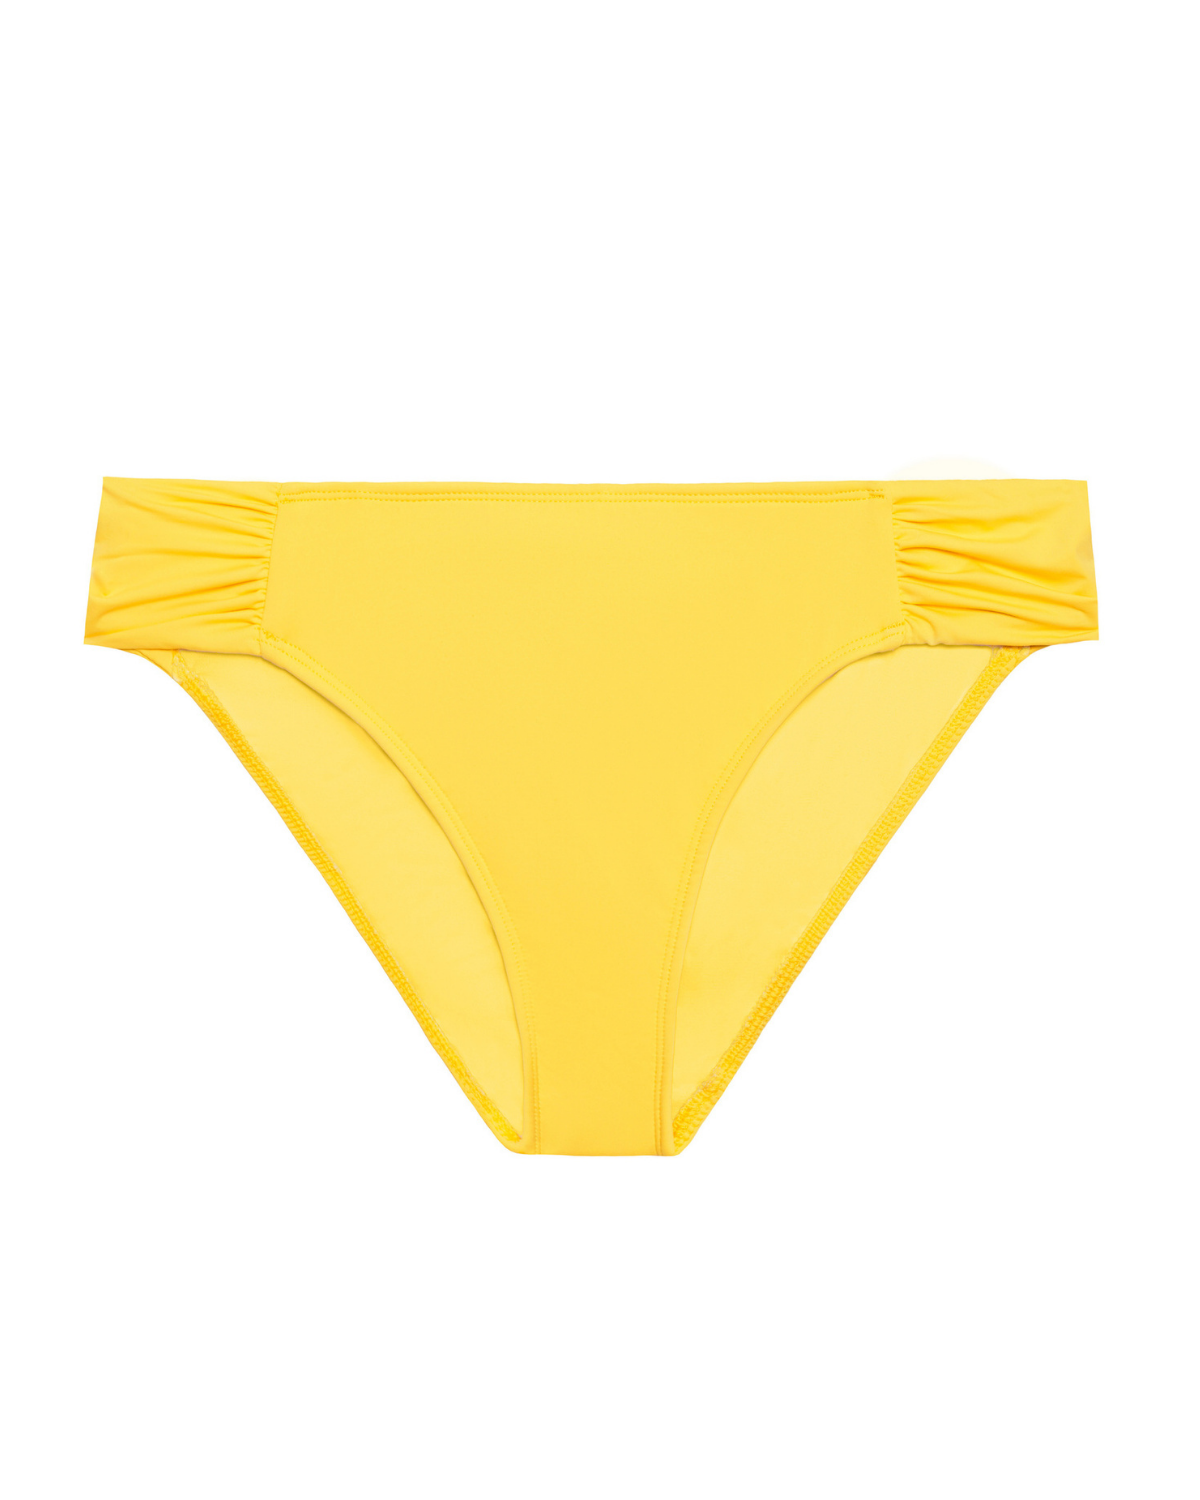 Flat lay of a tab side hipster bikini bottom in yellow